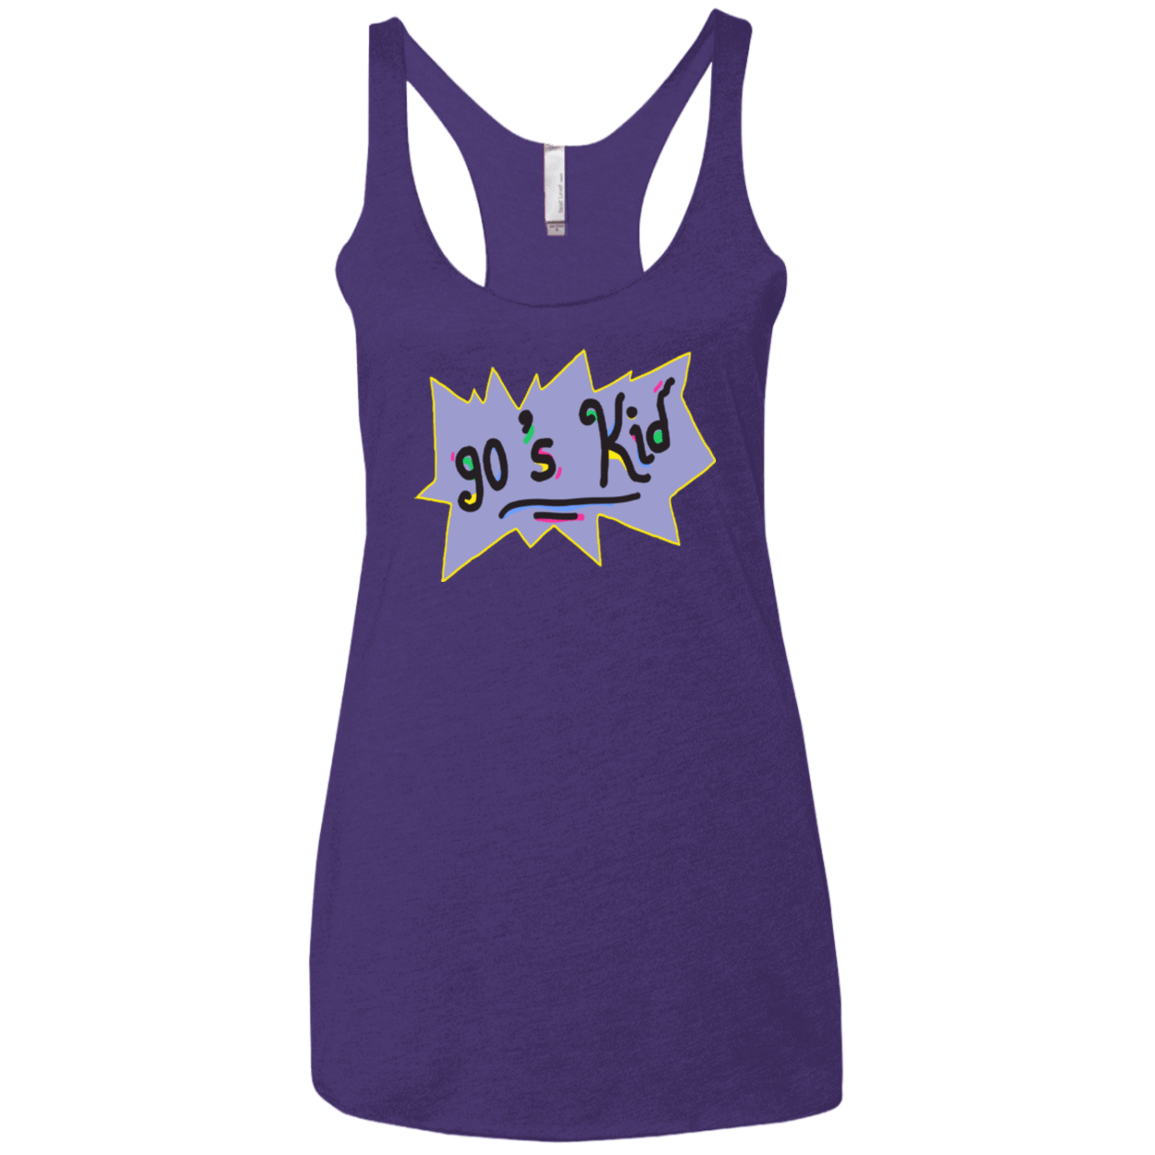 T-Shirts Purple / X-Small 90's Kid Women's Triblend Racerback Tank